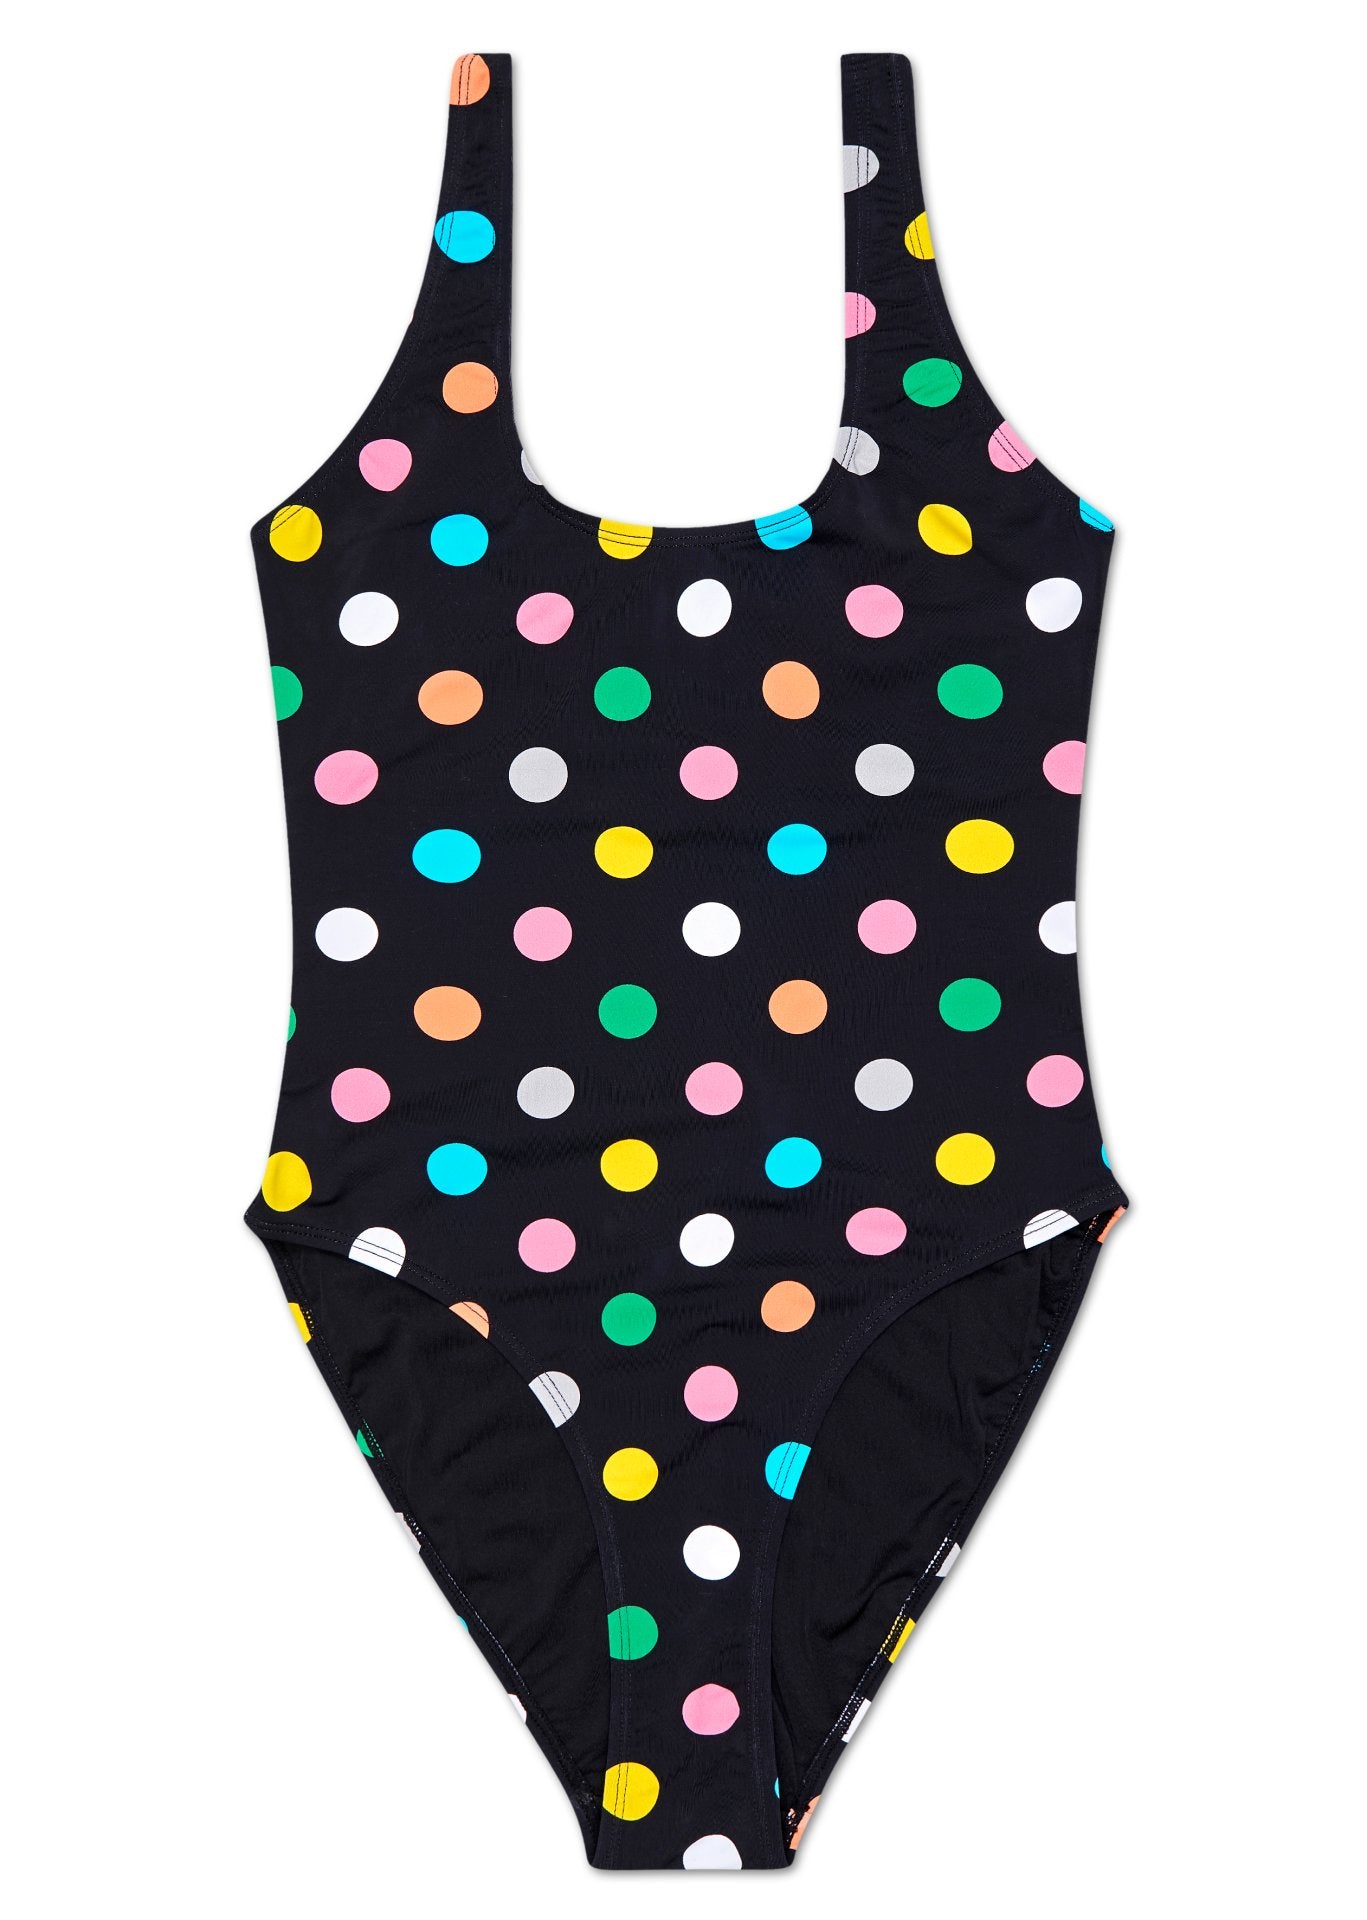 Čierne dámske plavky Happy Socks s farebnými bodkami, vzor Big Dot